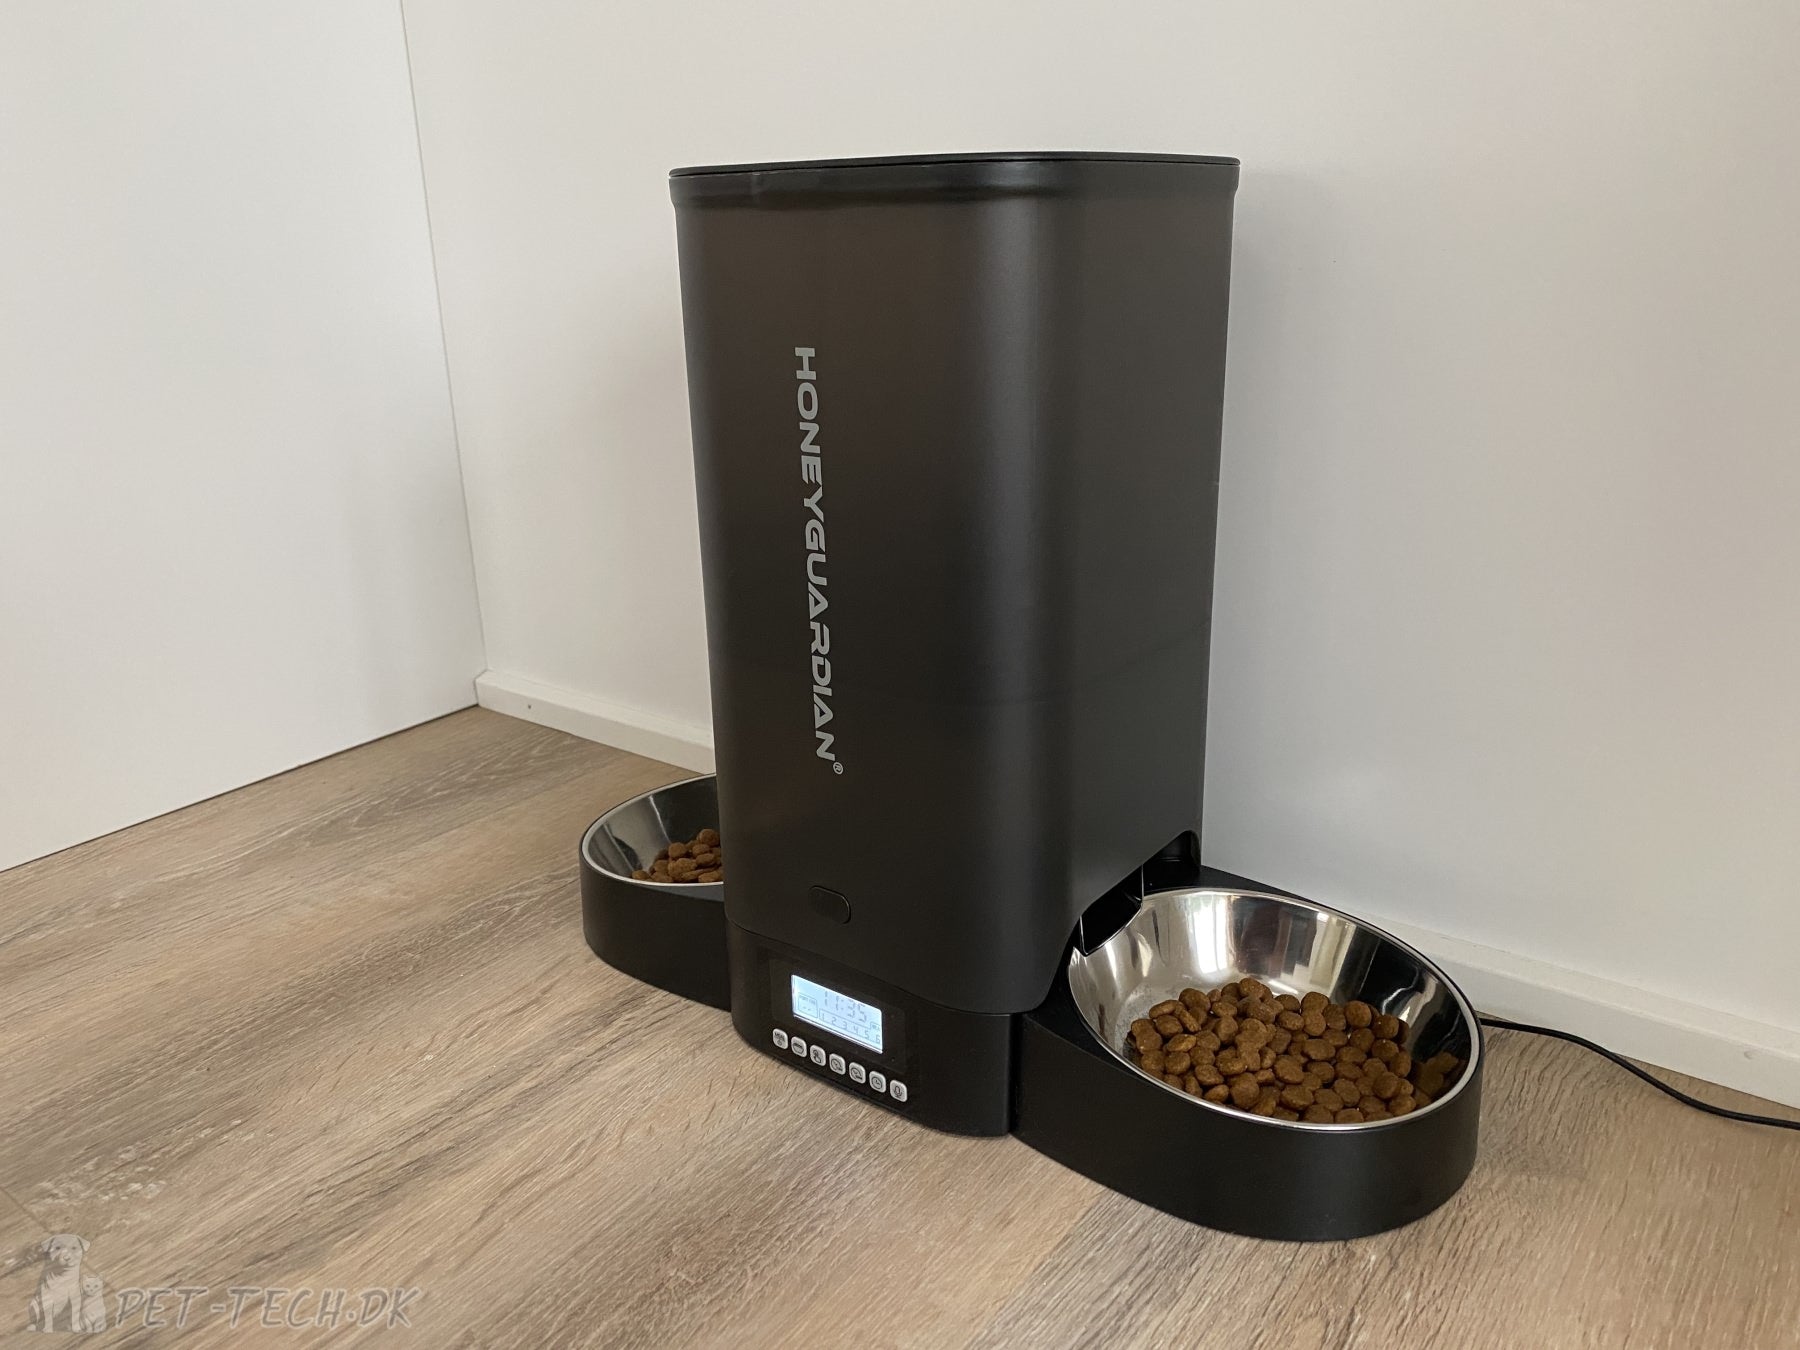 Foderautomat til katte og mindre hunde 5 liter - smart clean design